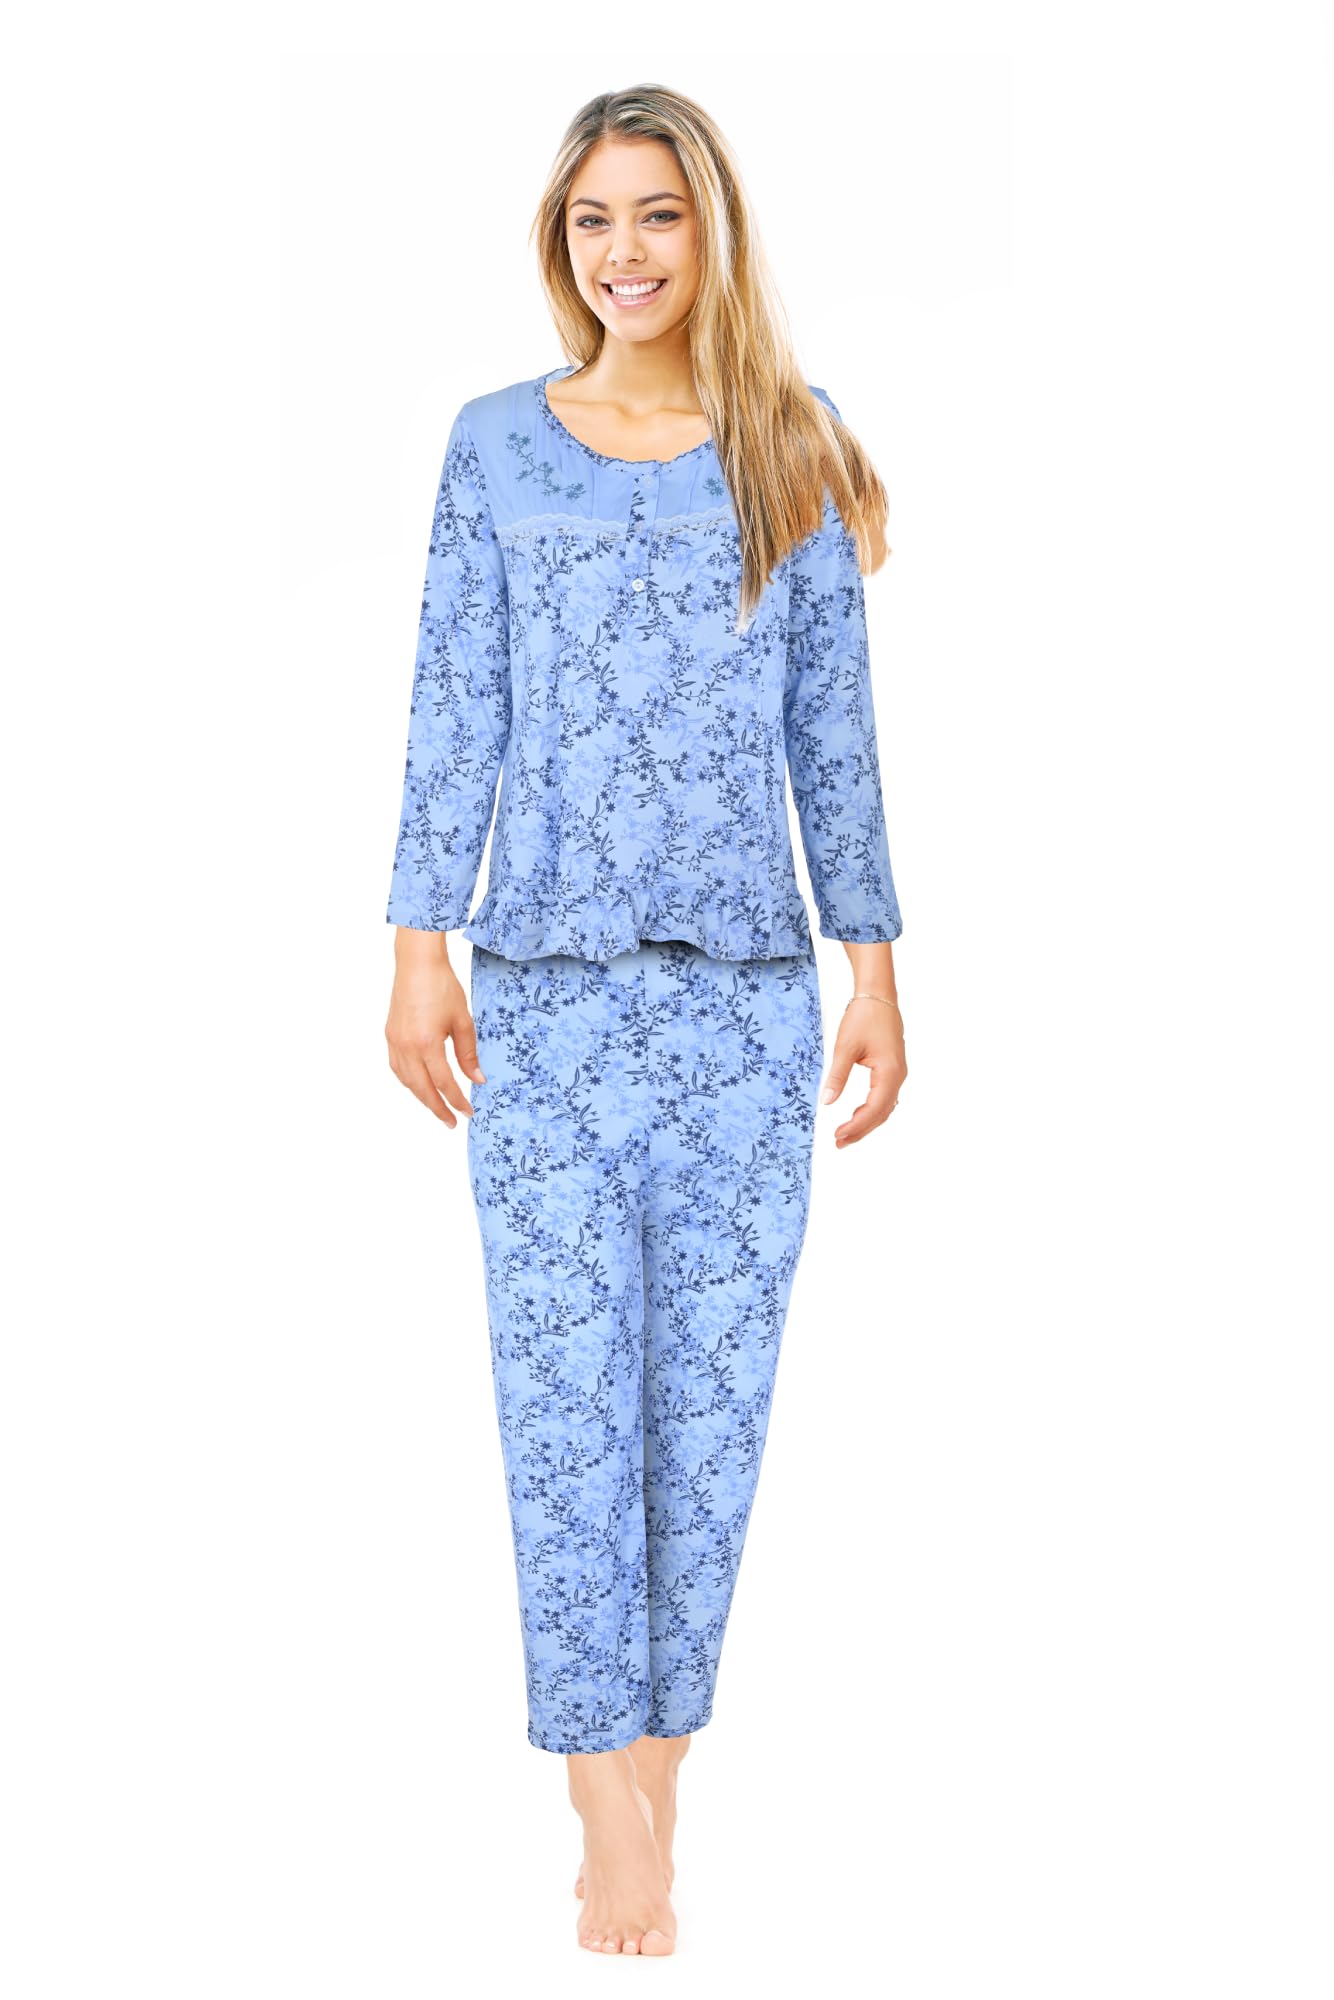 JEFFRICO Womens Pajamas For Women Long Sleeve Pajamas Set